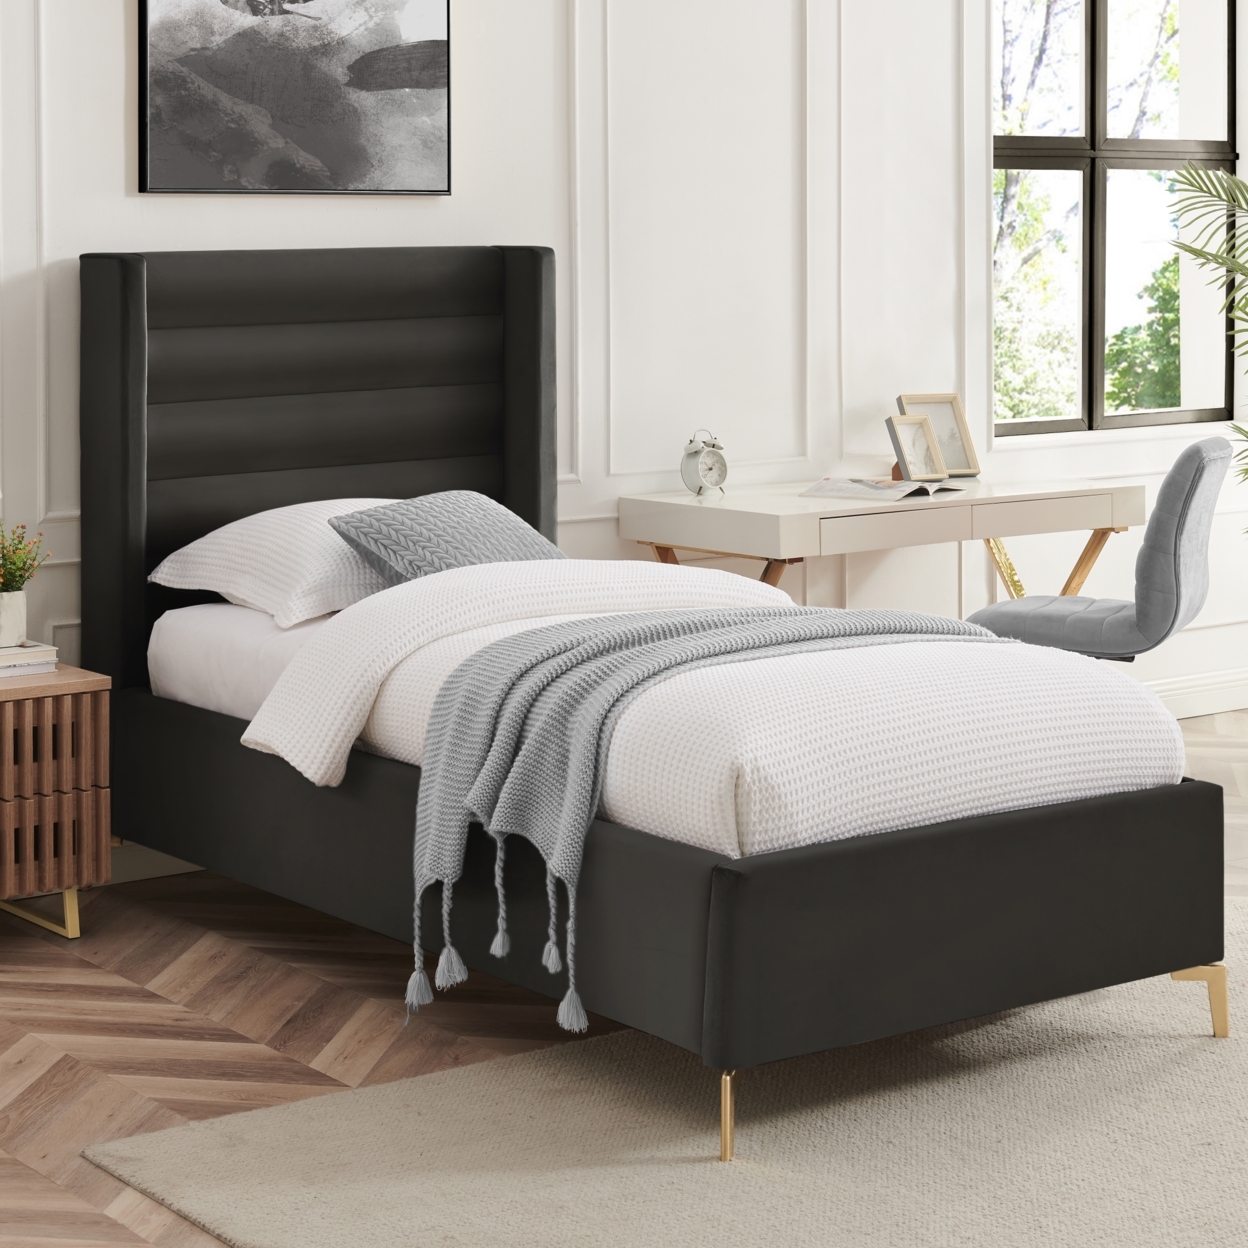 Rayce Bed -Velvet Upholstered, Wingback Channel Tufted Headboard, Oblique Legs, Slats Included - Light Grey, Full